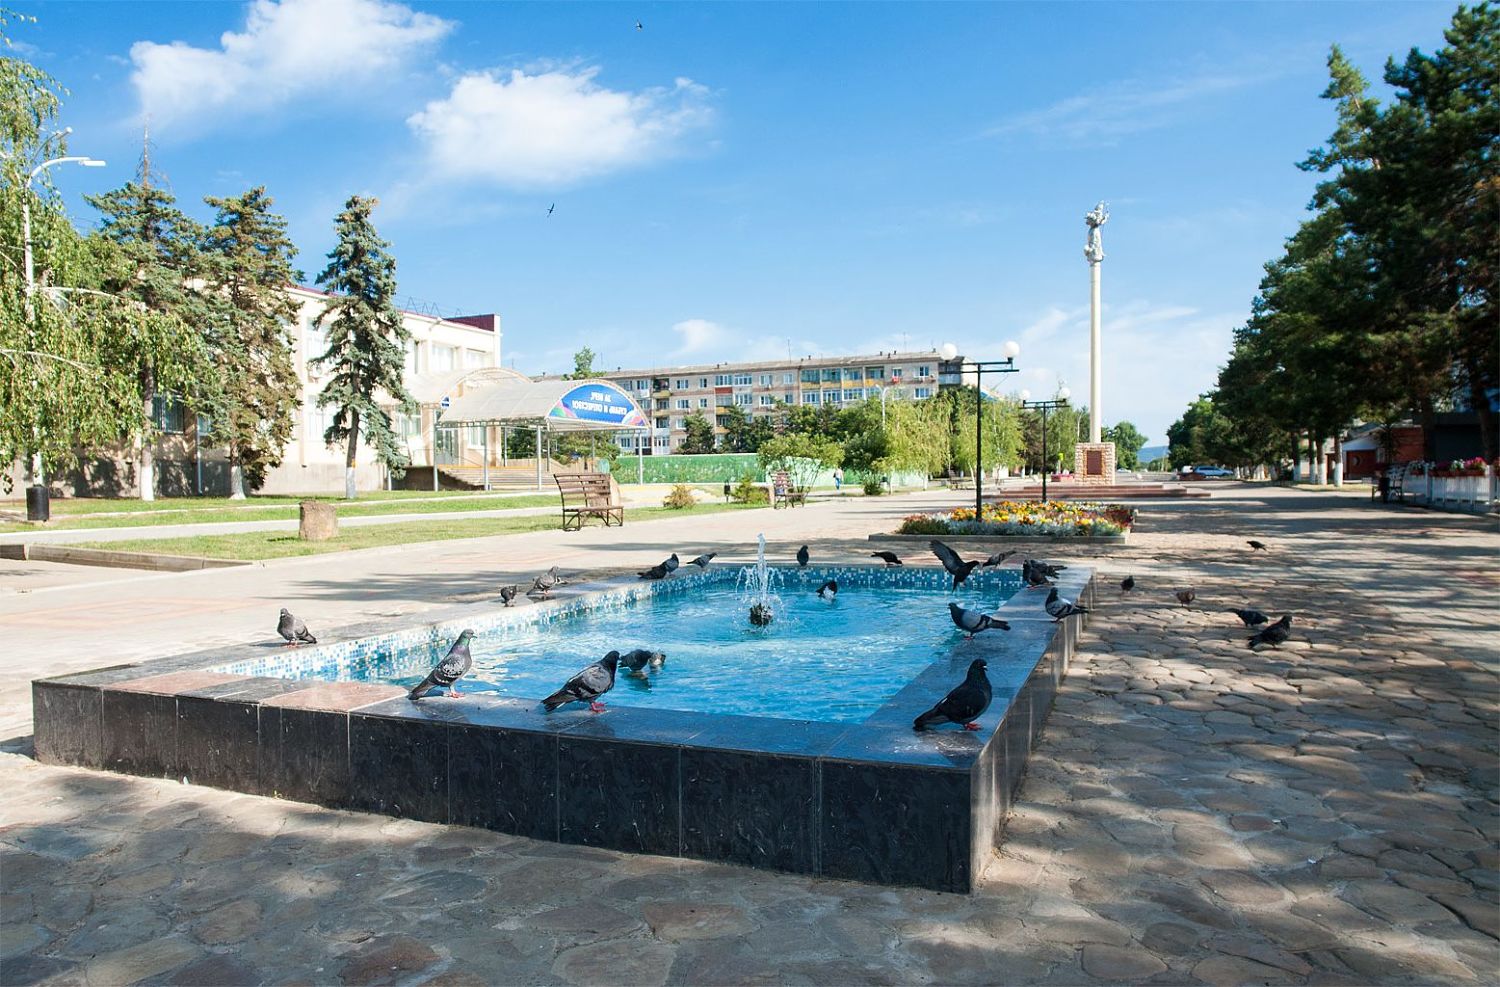 Незабываемый отдых в Абинске в 2017 году от Арт-Макс